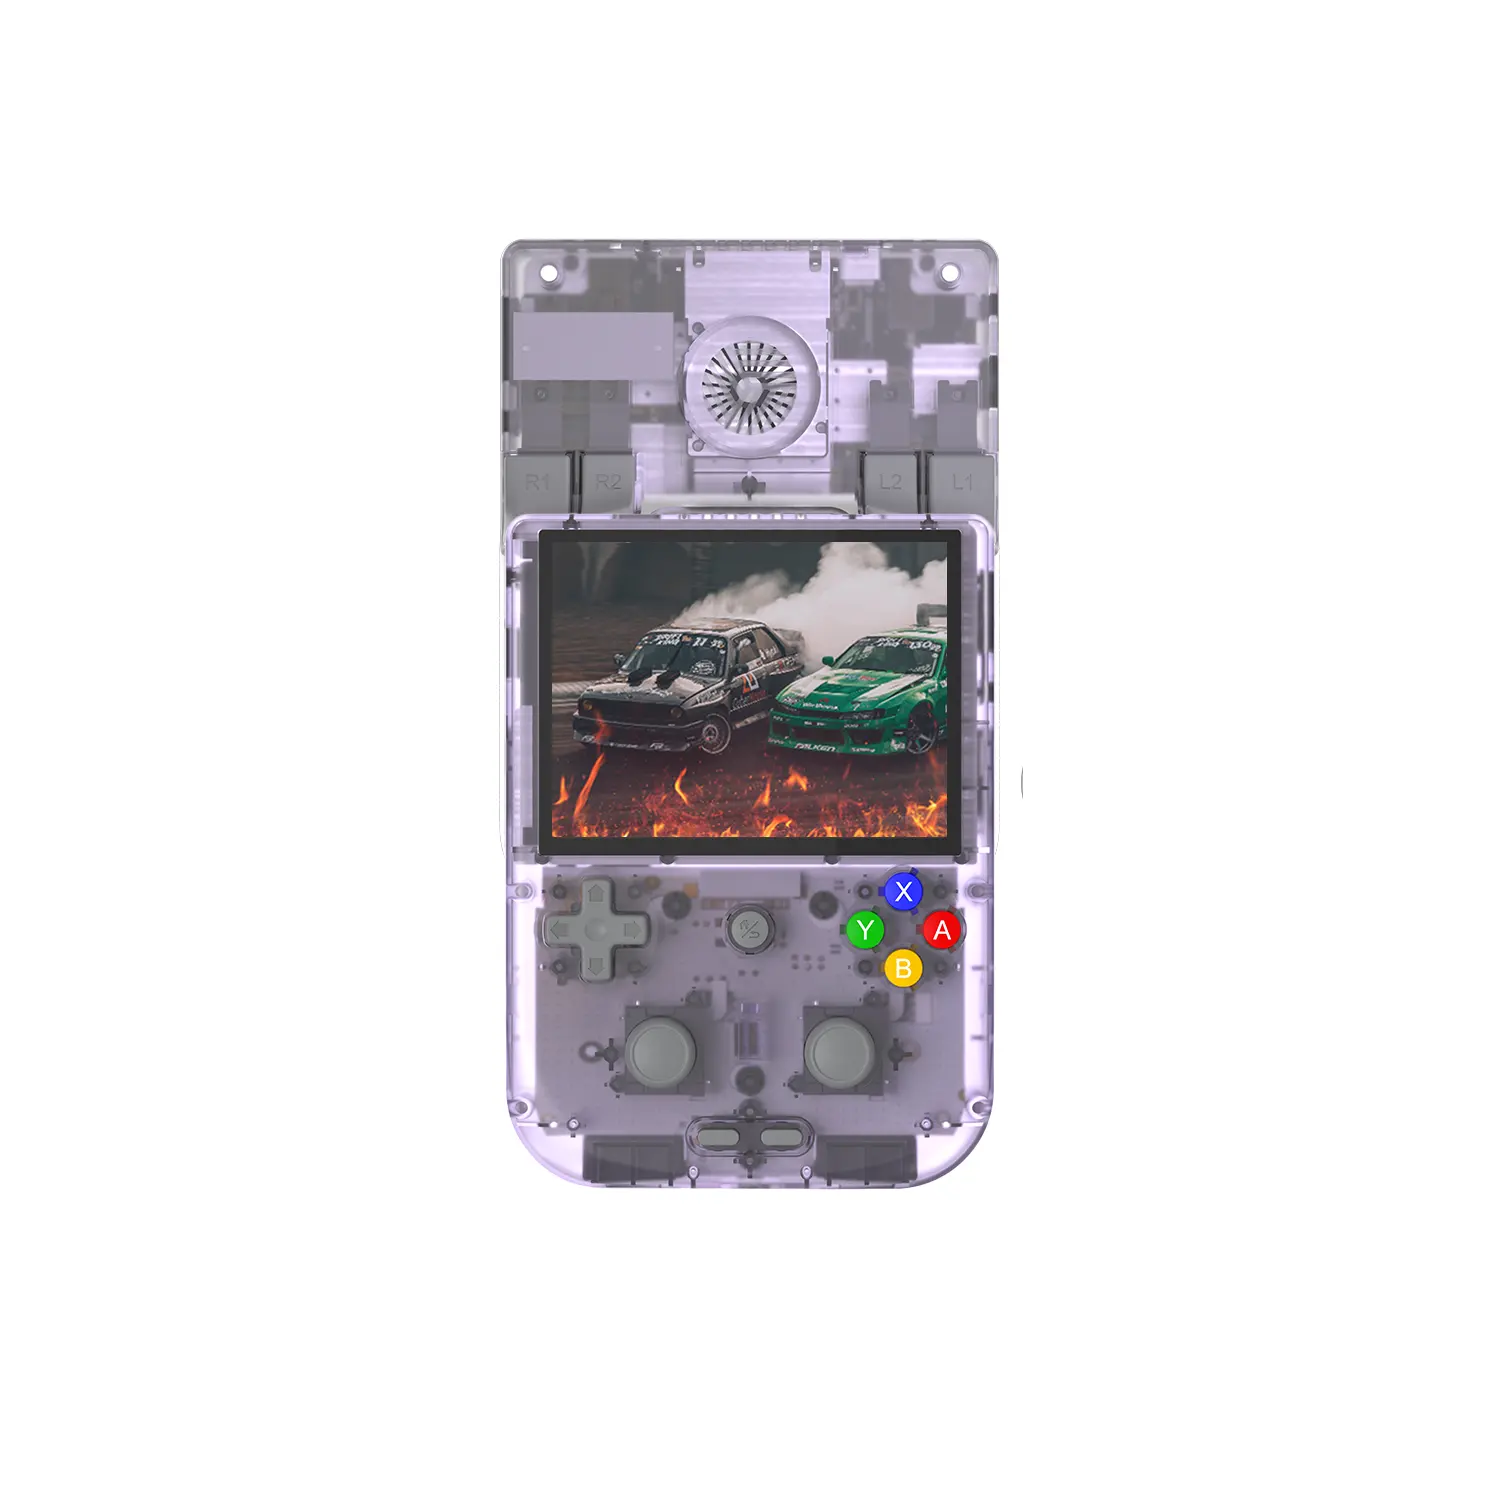 Anbernic RG405V 4 pouces mini console de jeu d'arcade portable rétro pour Android smart gaming, peut télécharger des jeux par vous-même, violet